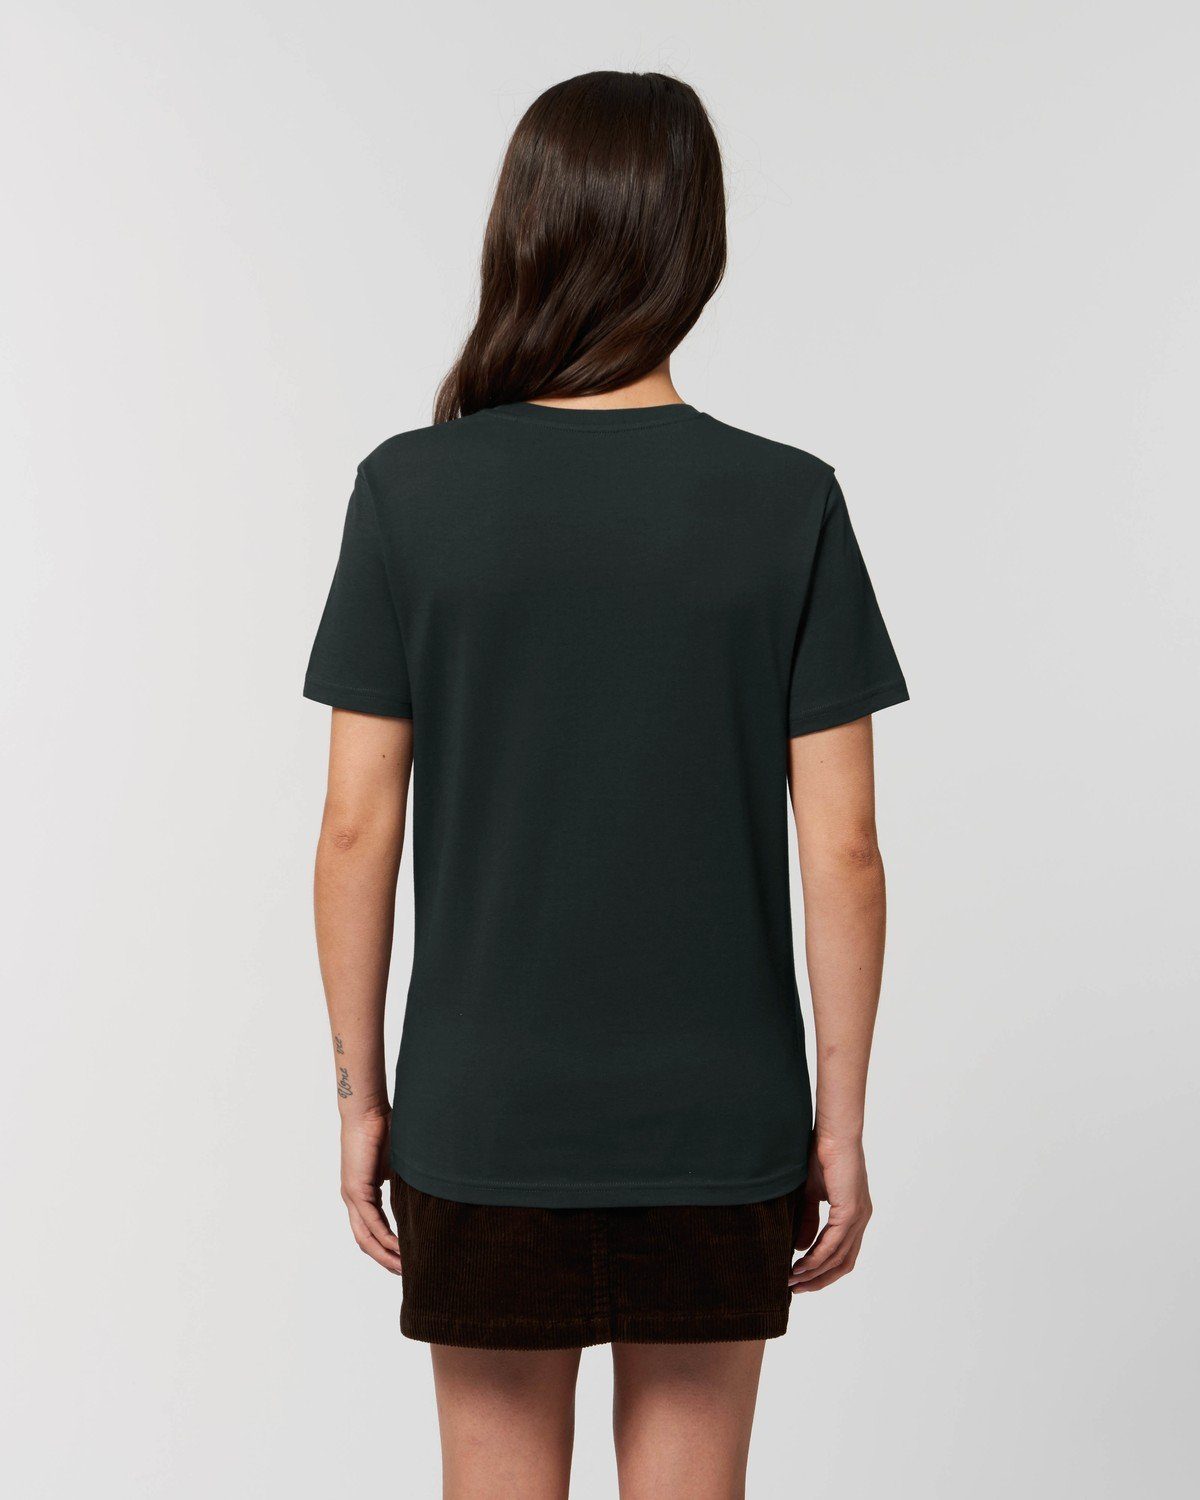 aus 100% Black T-Shirt Unisex T-Shirt Hilltop Hochwertiges Bio-Baumwolle